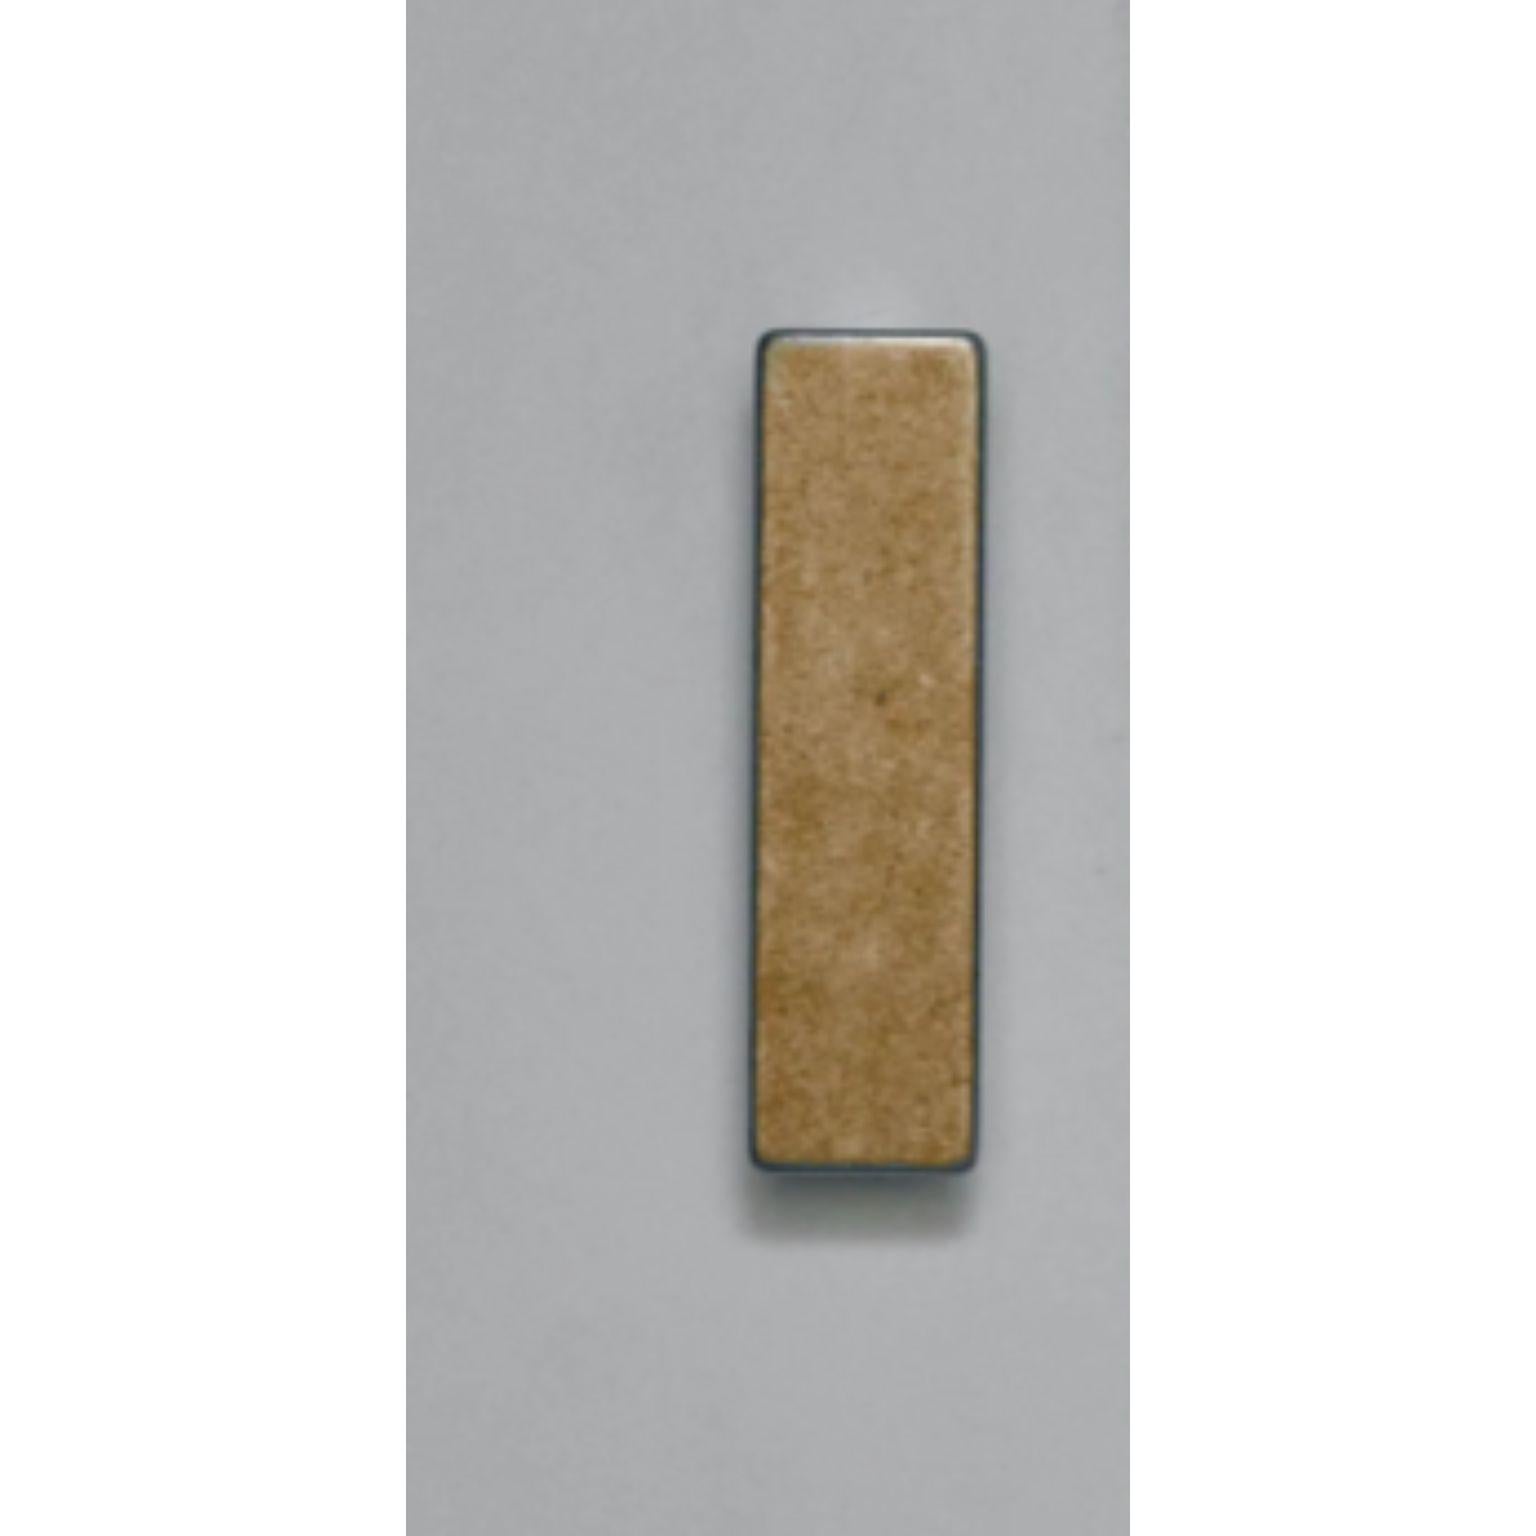 Poignée brutaliste en laiton d'Henry Wilson
Dimensions : L 3 x P 2 x H 10 cm : L 3 x D 2 x H 10 cm
Matériaux : Laiton

Cette poignée polyvalente peut être utilisée pour les armoires, les portes coulissantes et les fenêtres à guillotine. 
Chaque